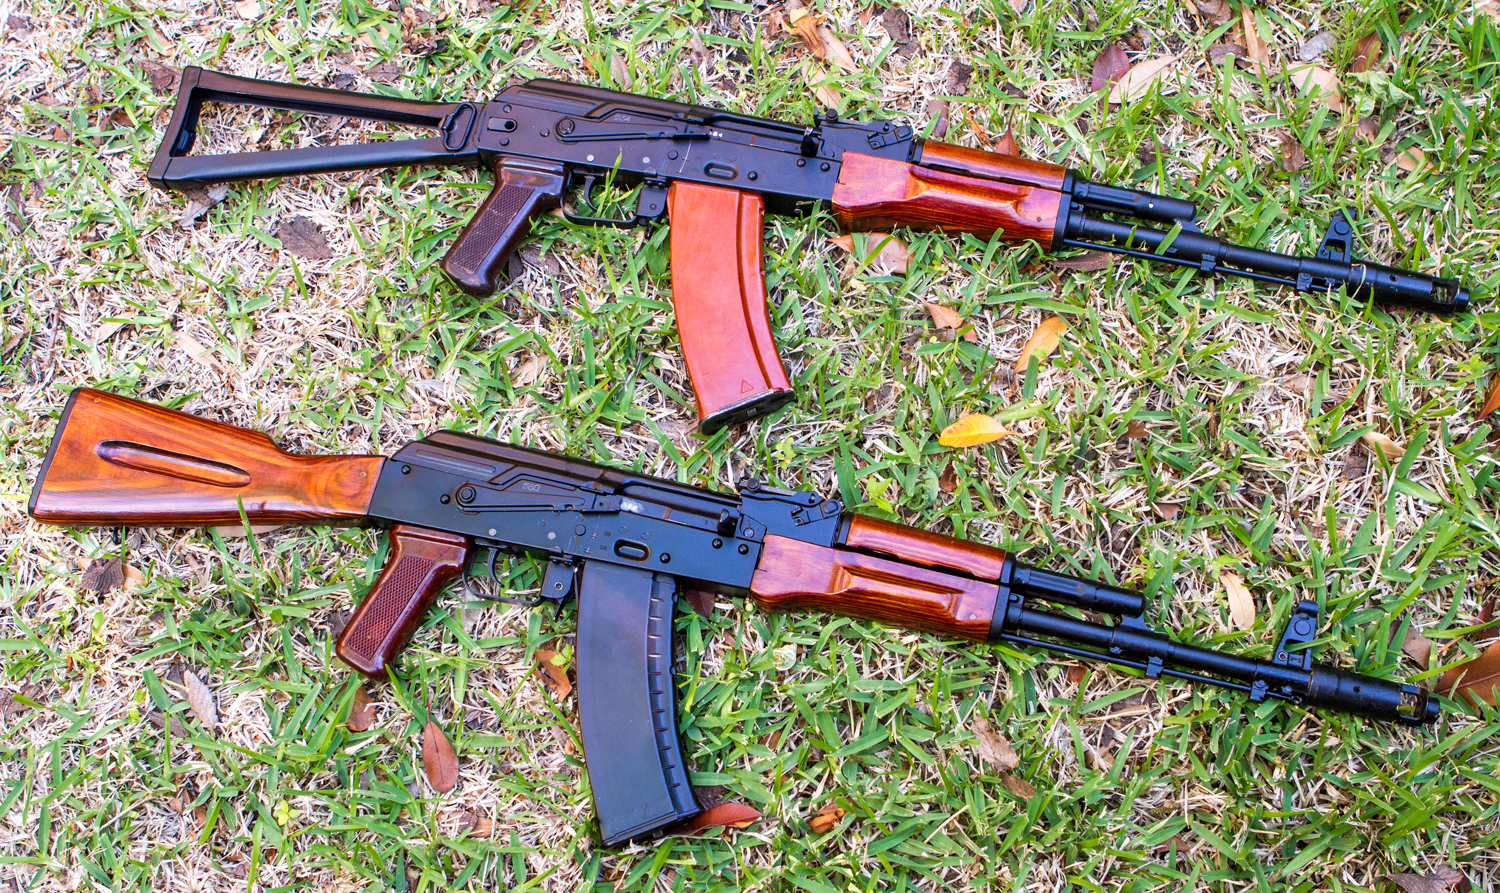 1983 AK-74 showcase